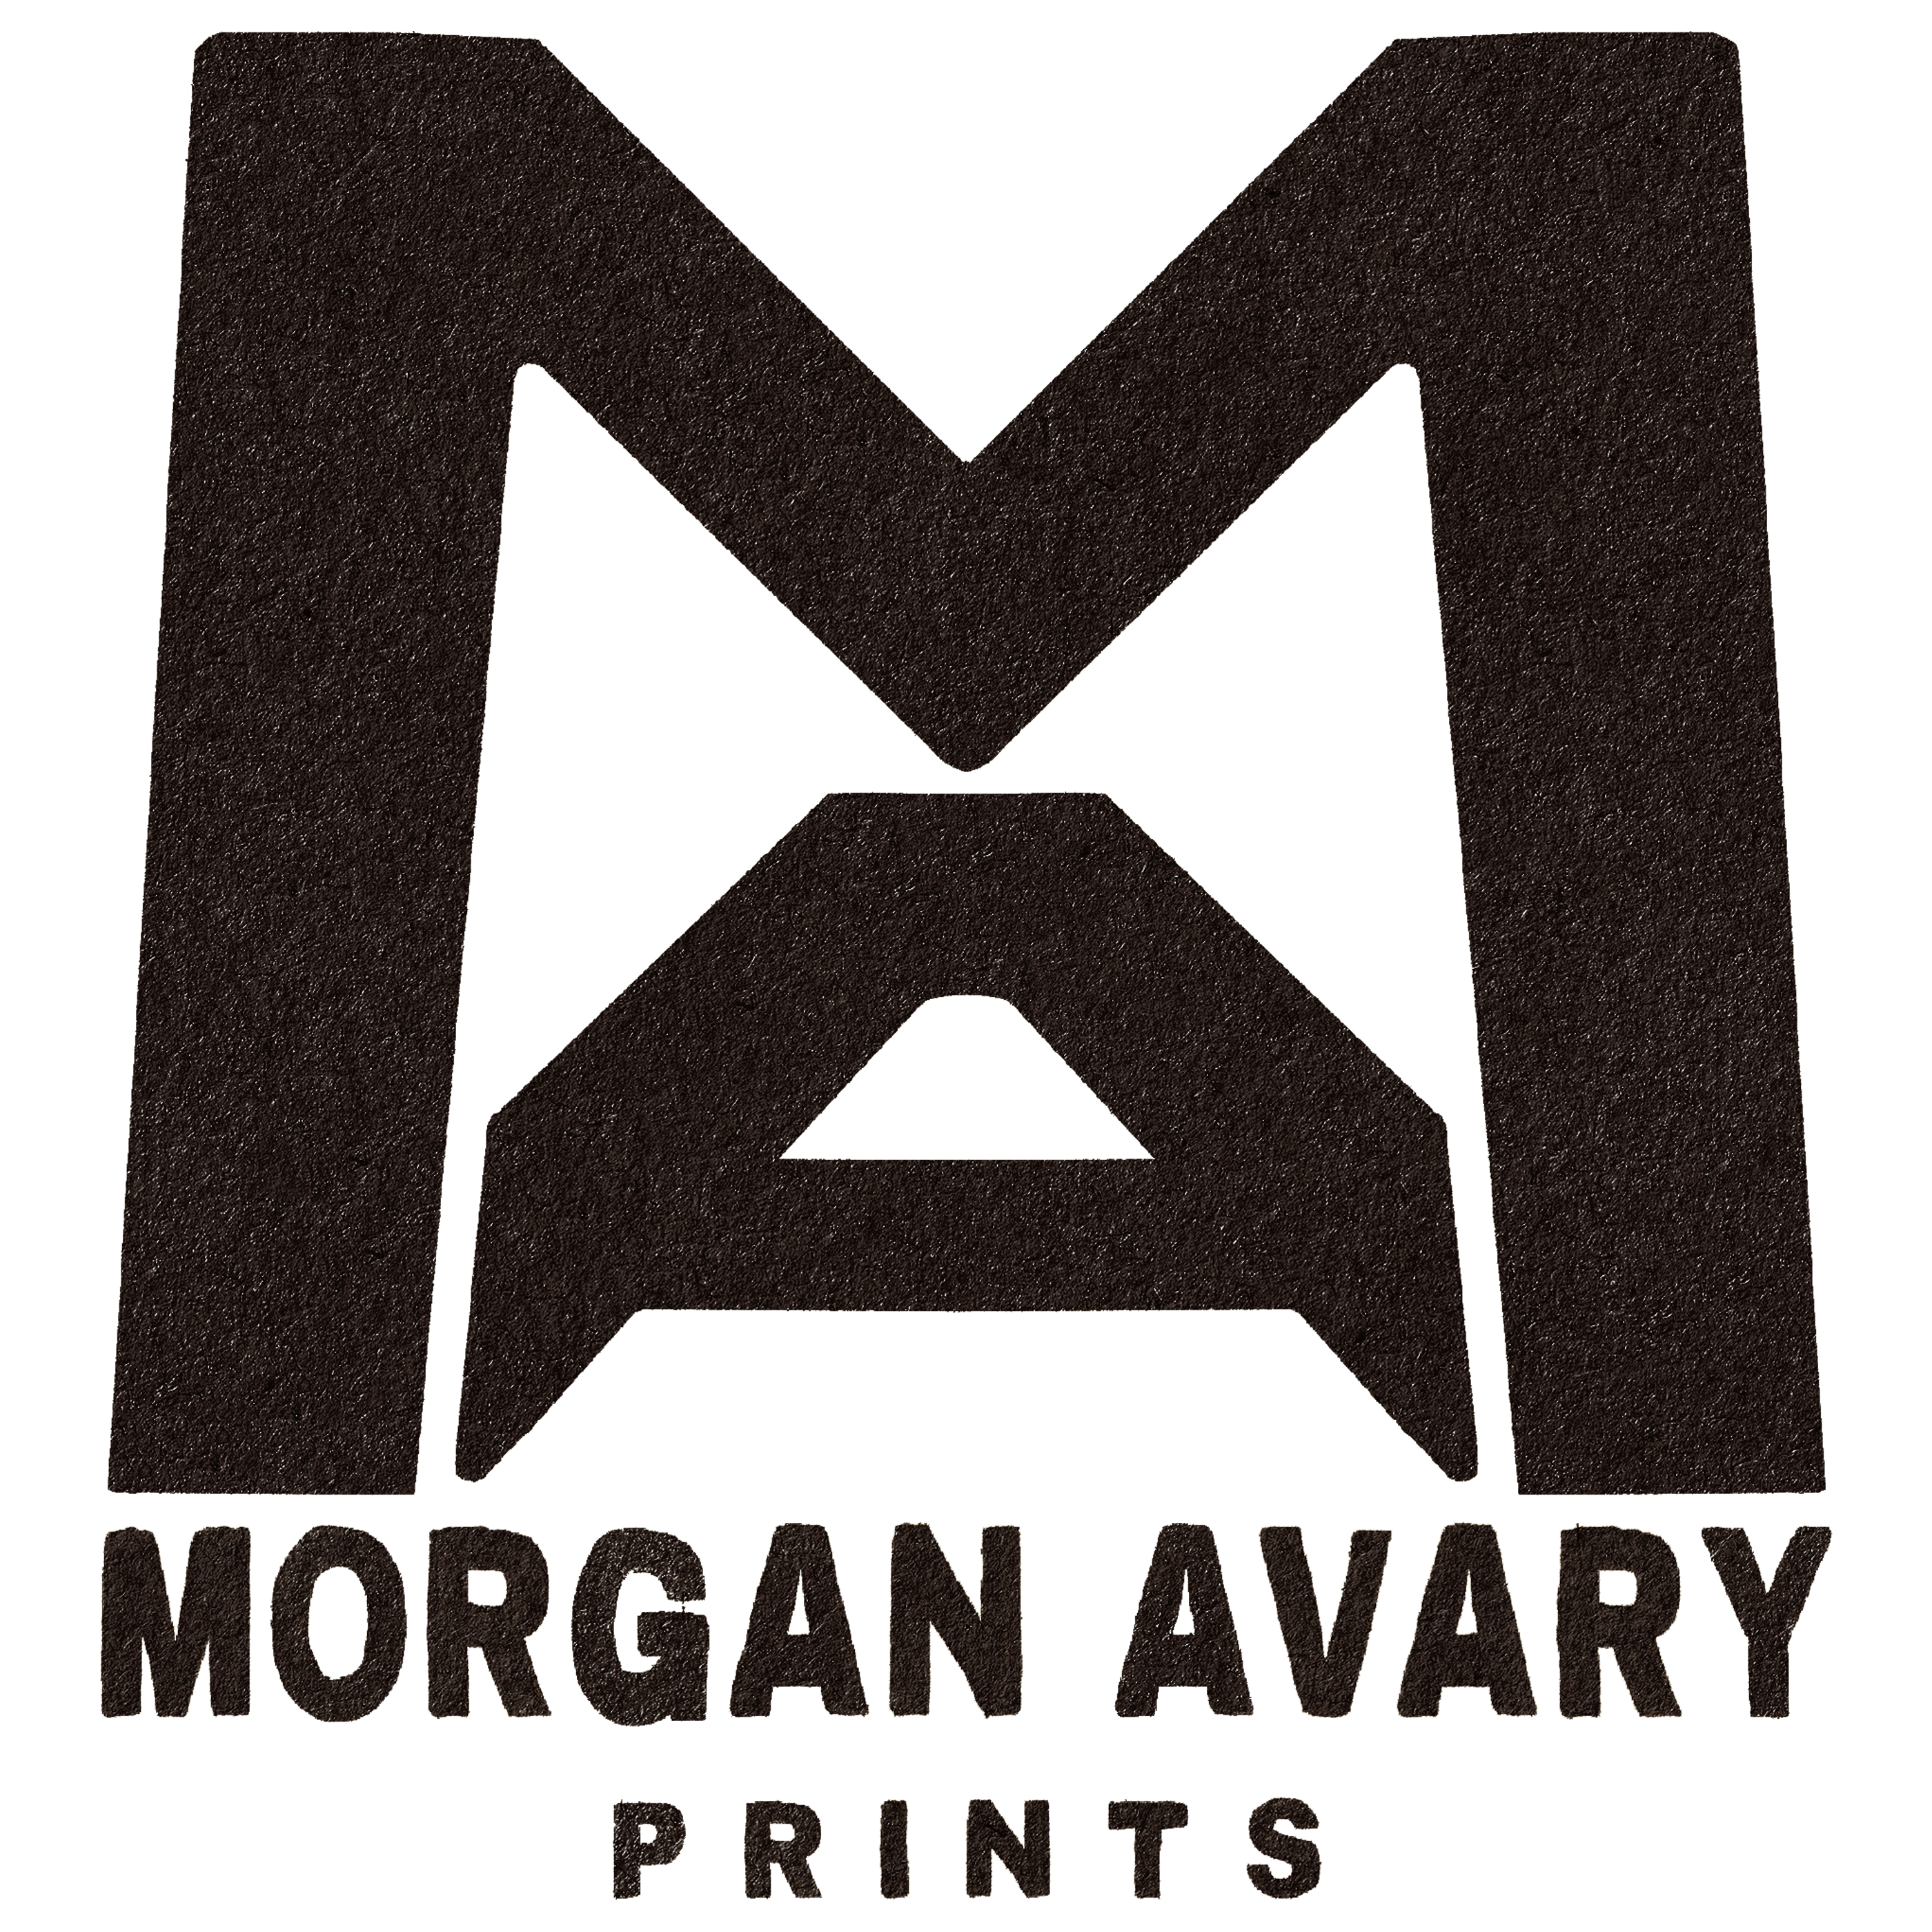 Morgan Avary